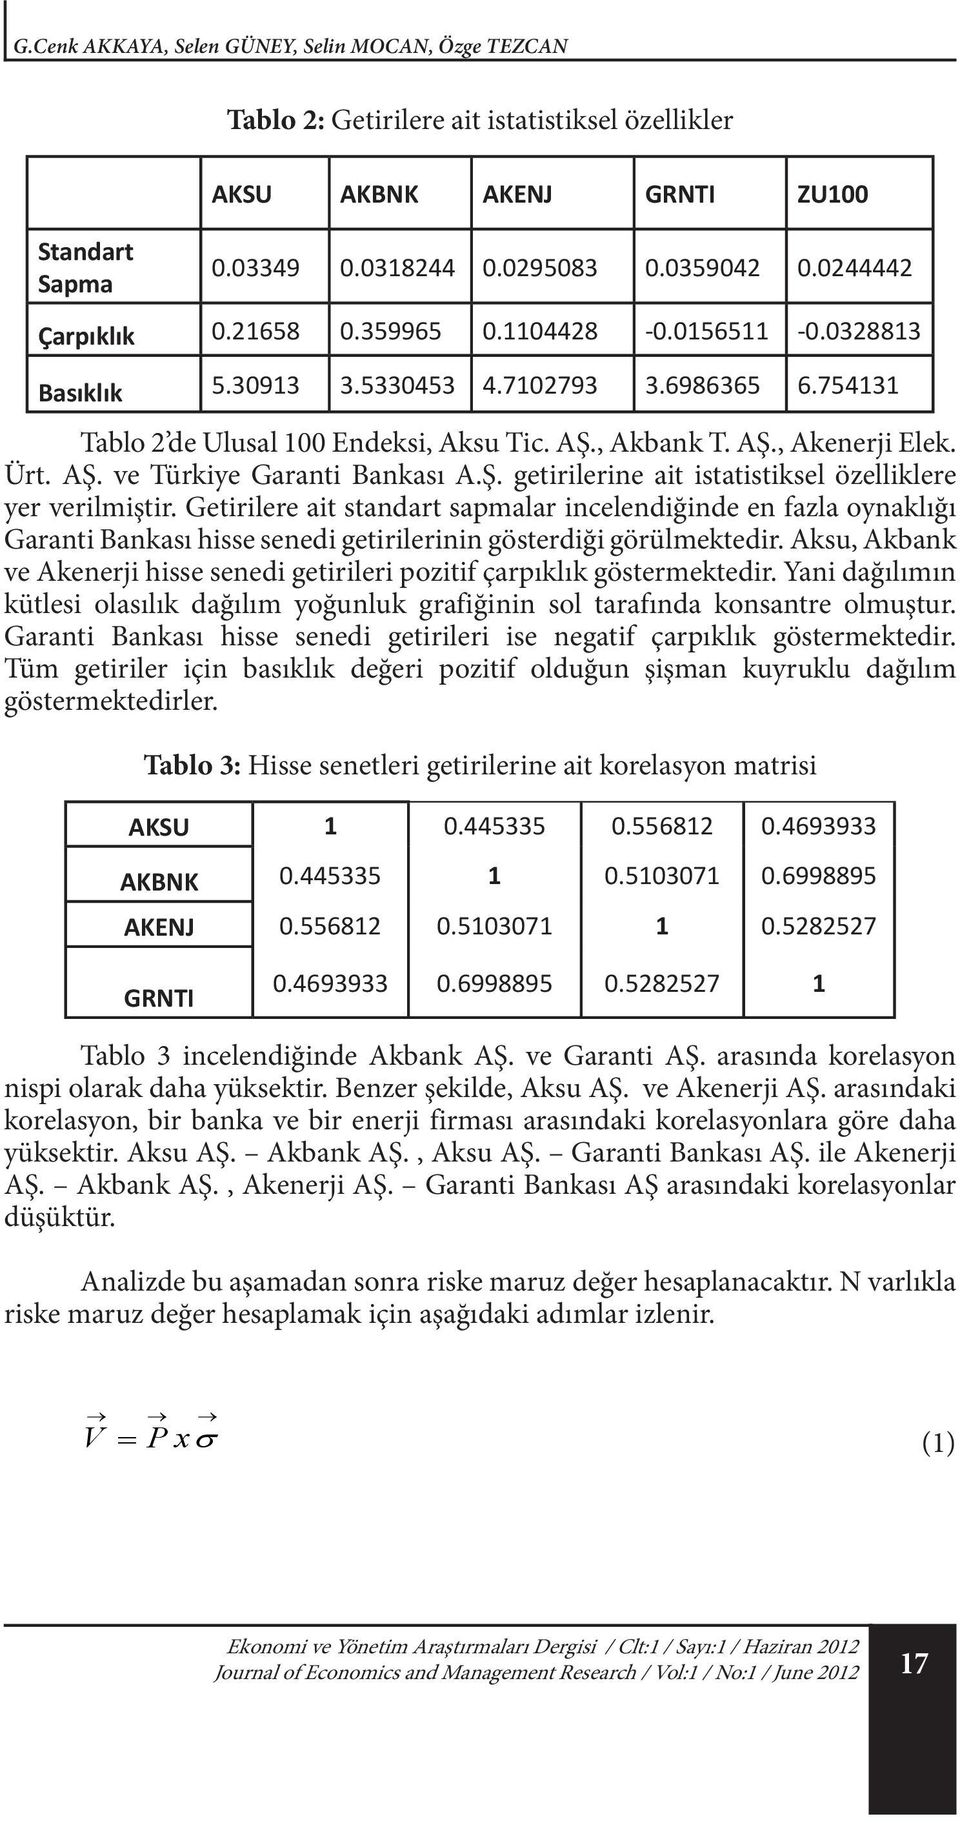 Ürt. AŞ. ve Türkiye Garanti Bankası A.Ş. getirilerine ait istatistiksel özelliklere yer verilmiştir.